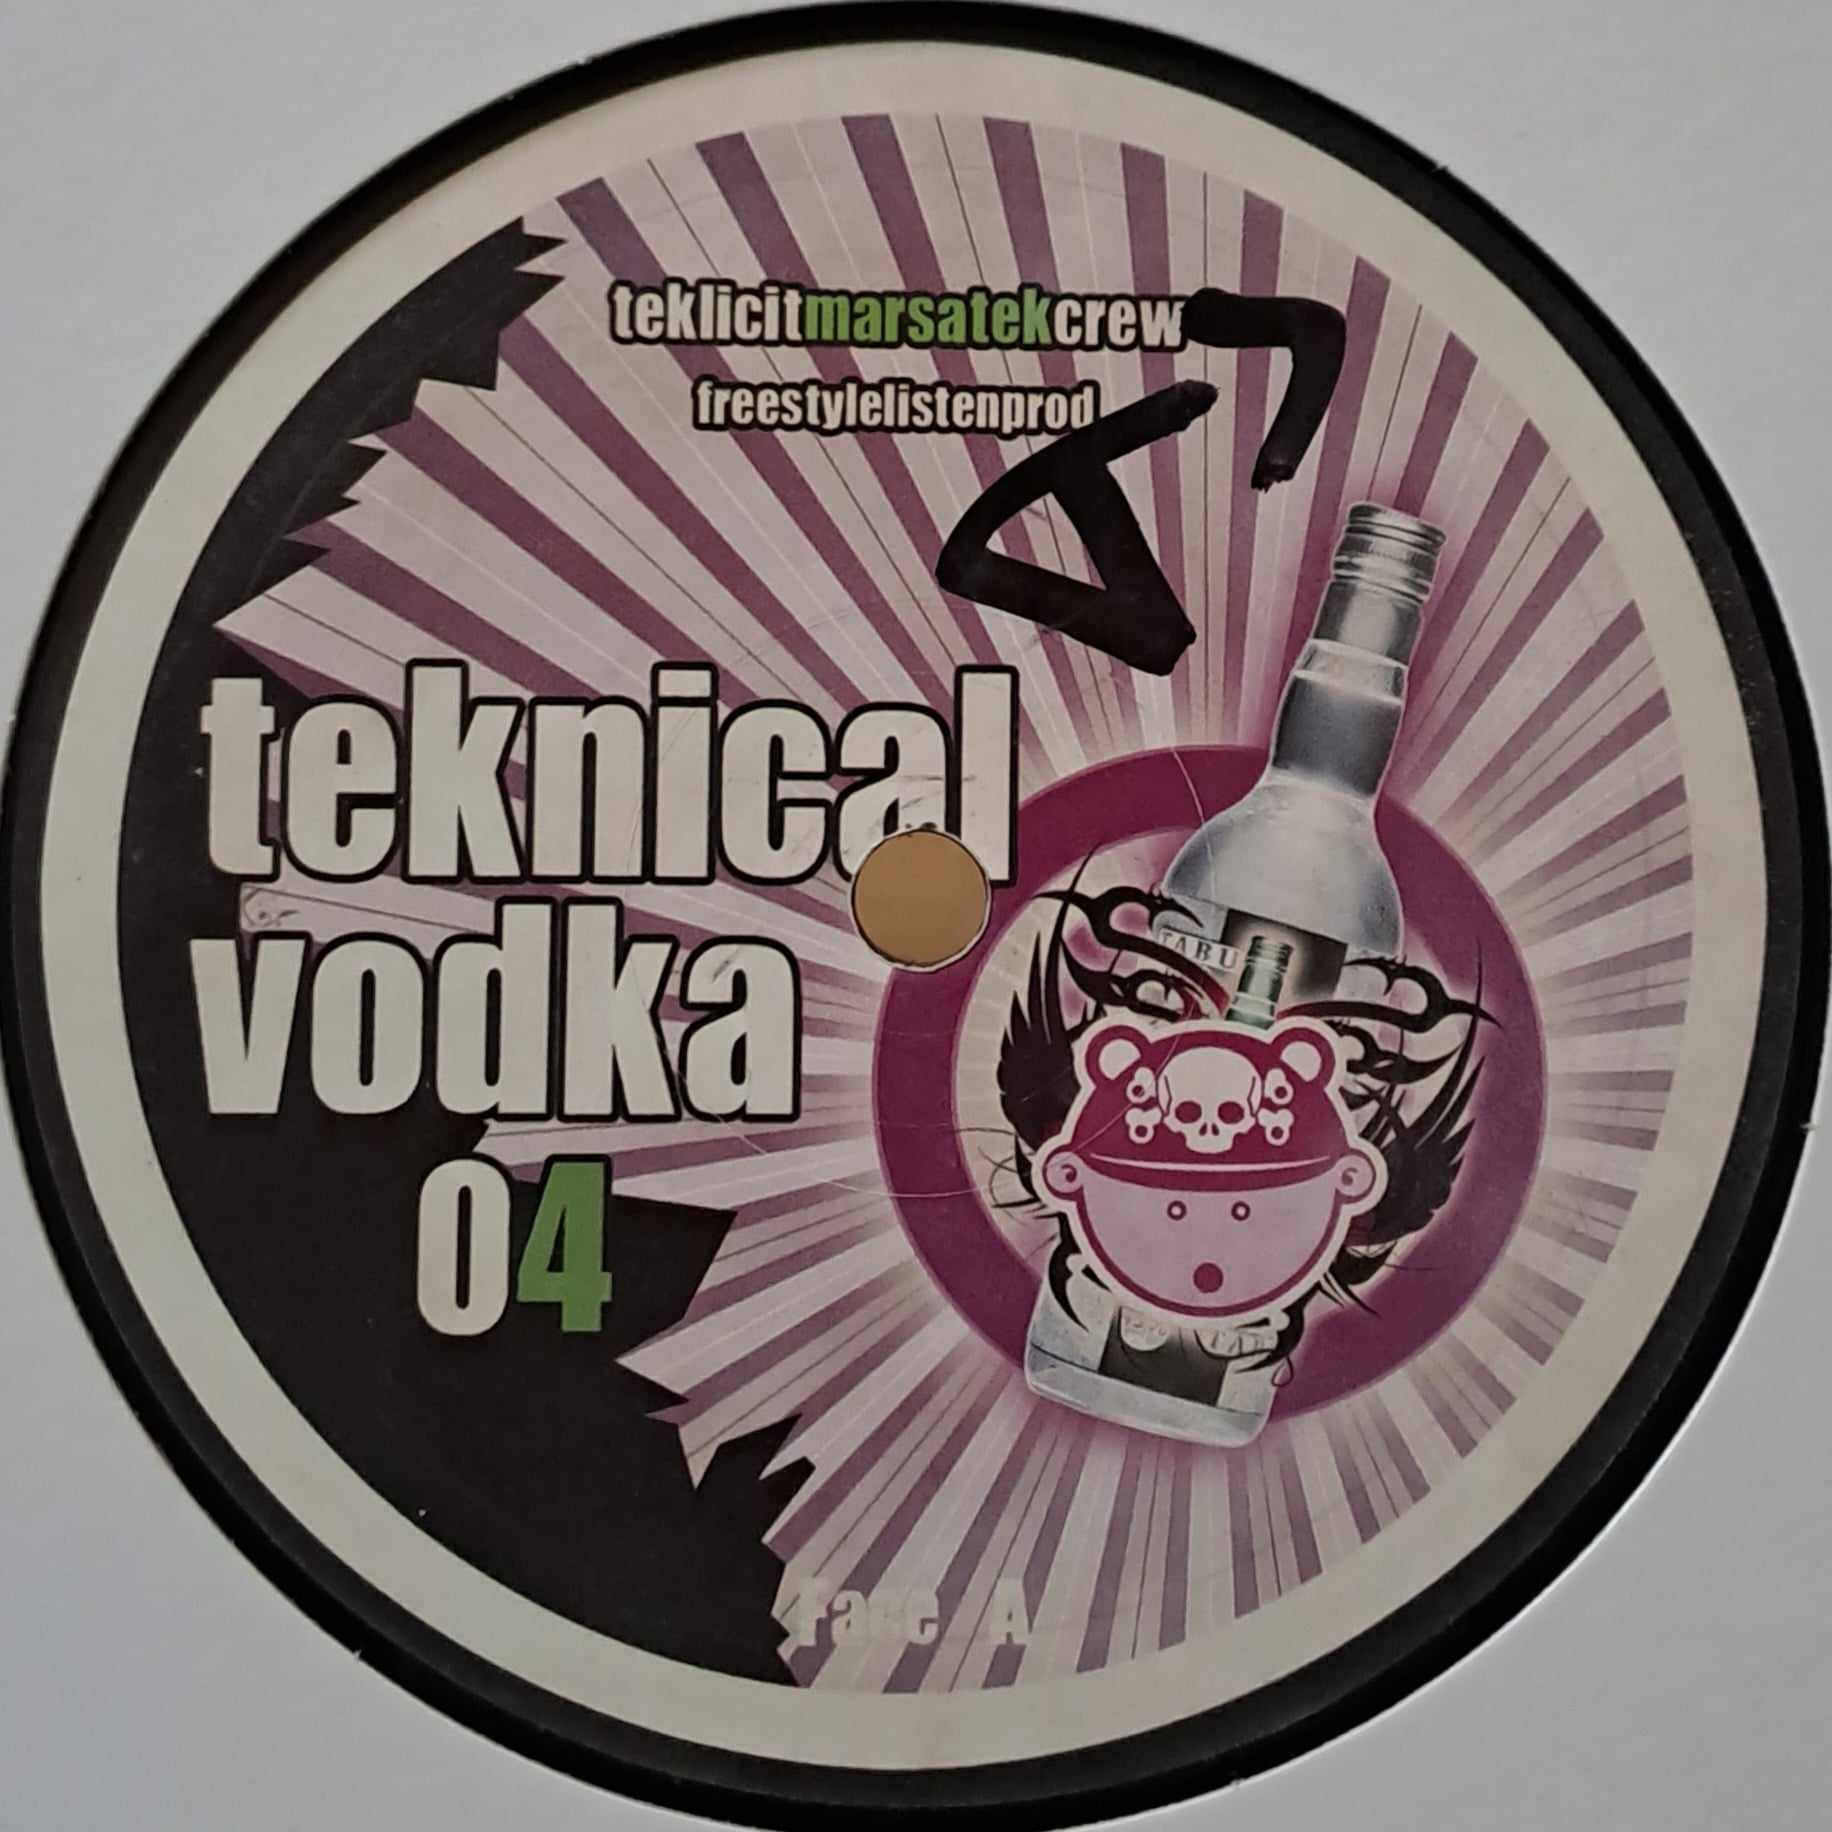 Teknical Vodka 04 - vinyle freetekno